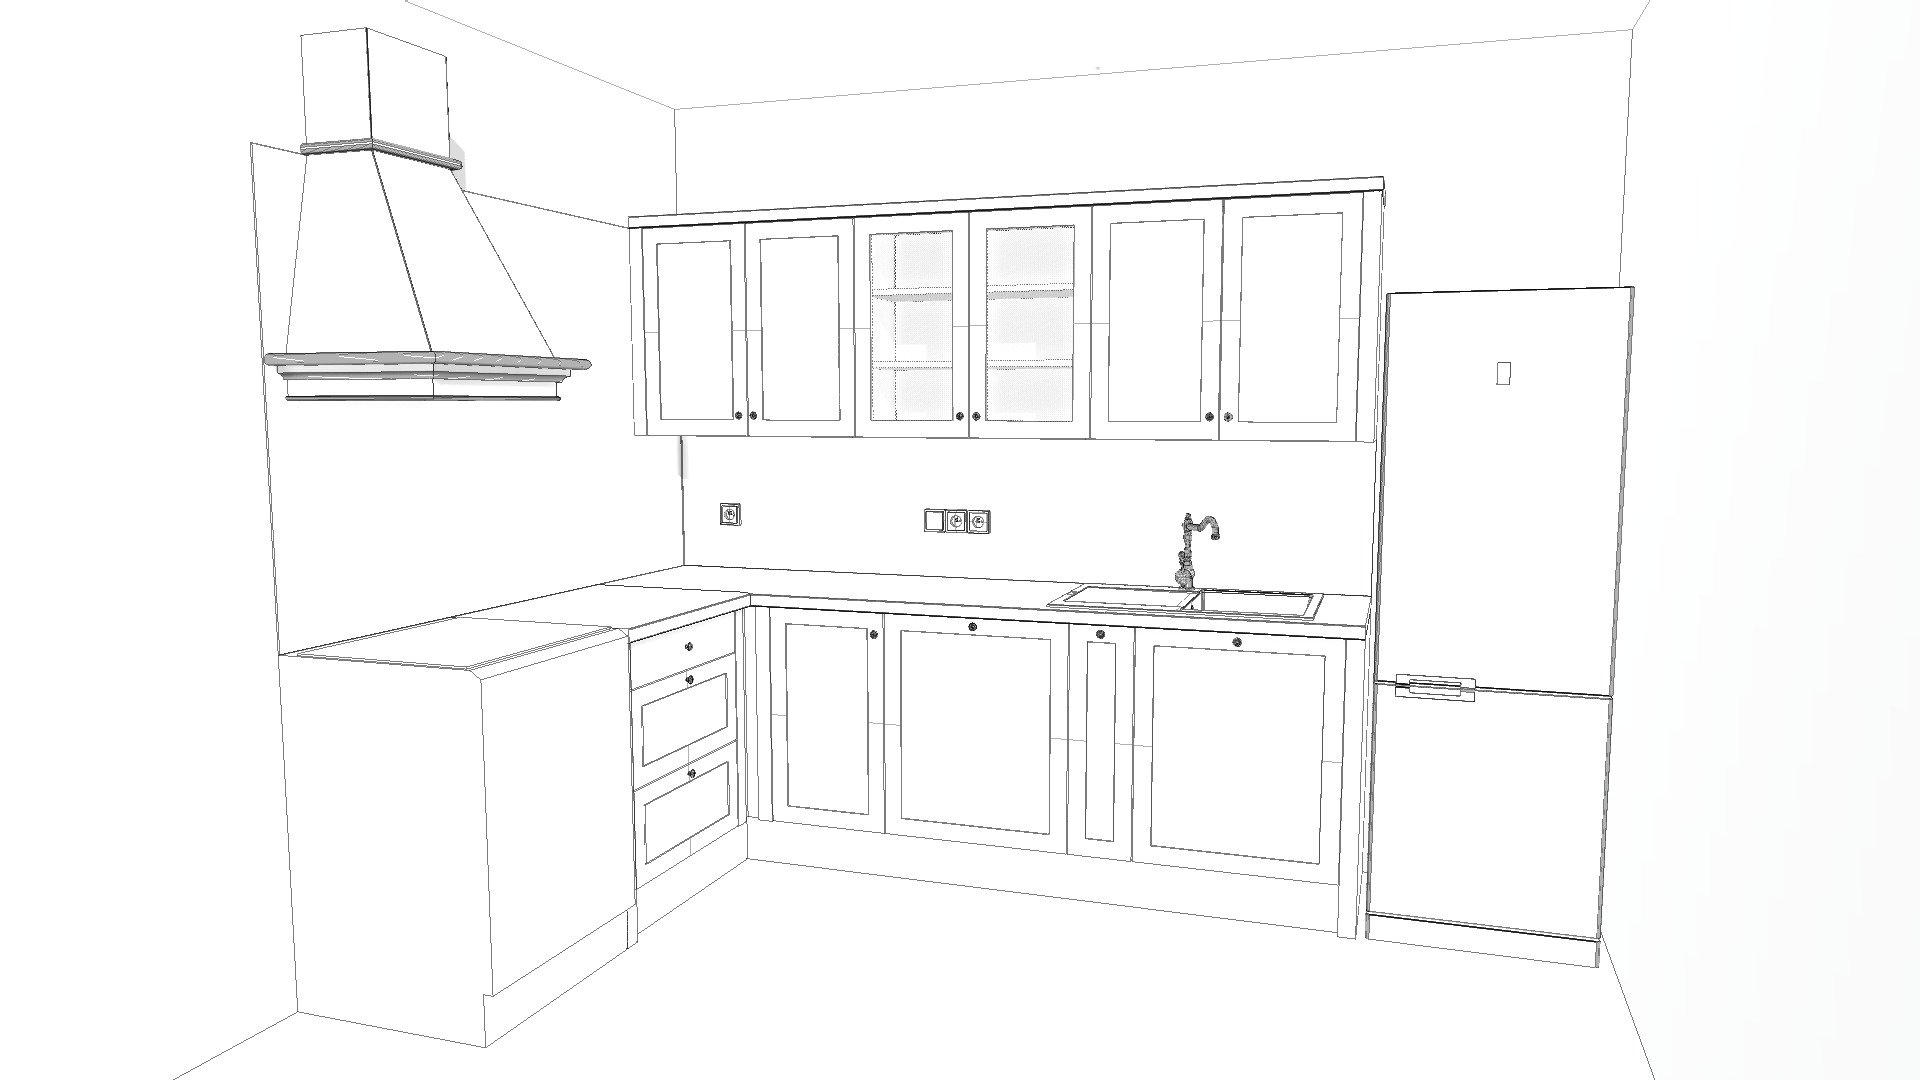 kuchyně Ma...s - v2 - 3D model by Mar.K [0c74b7d] - Sketchfab